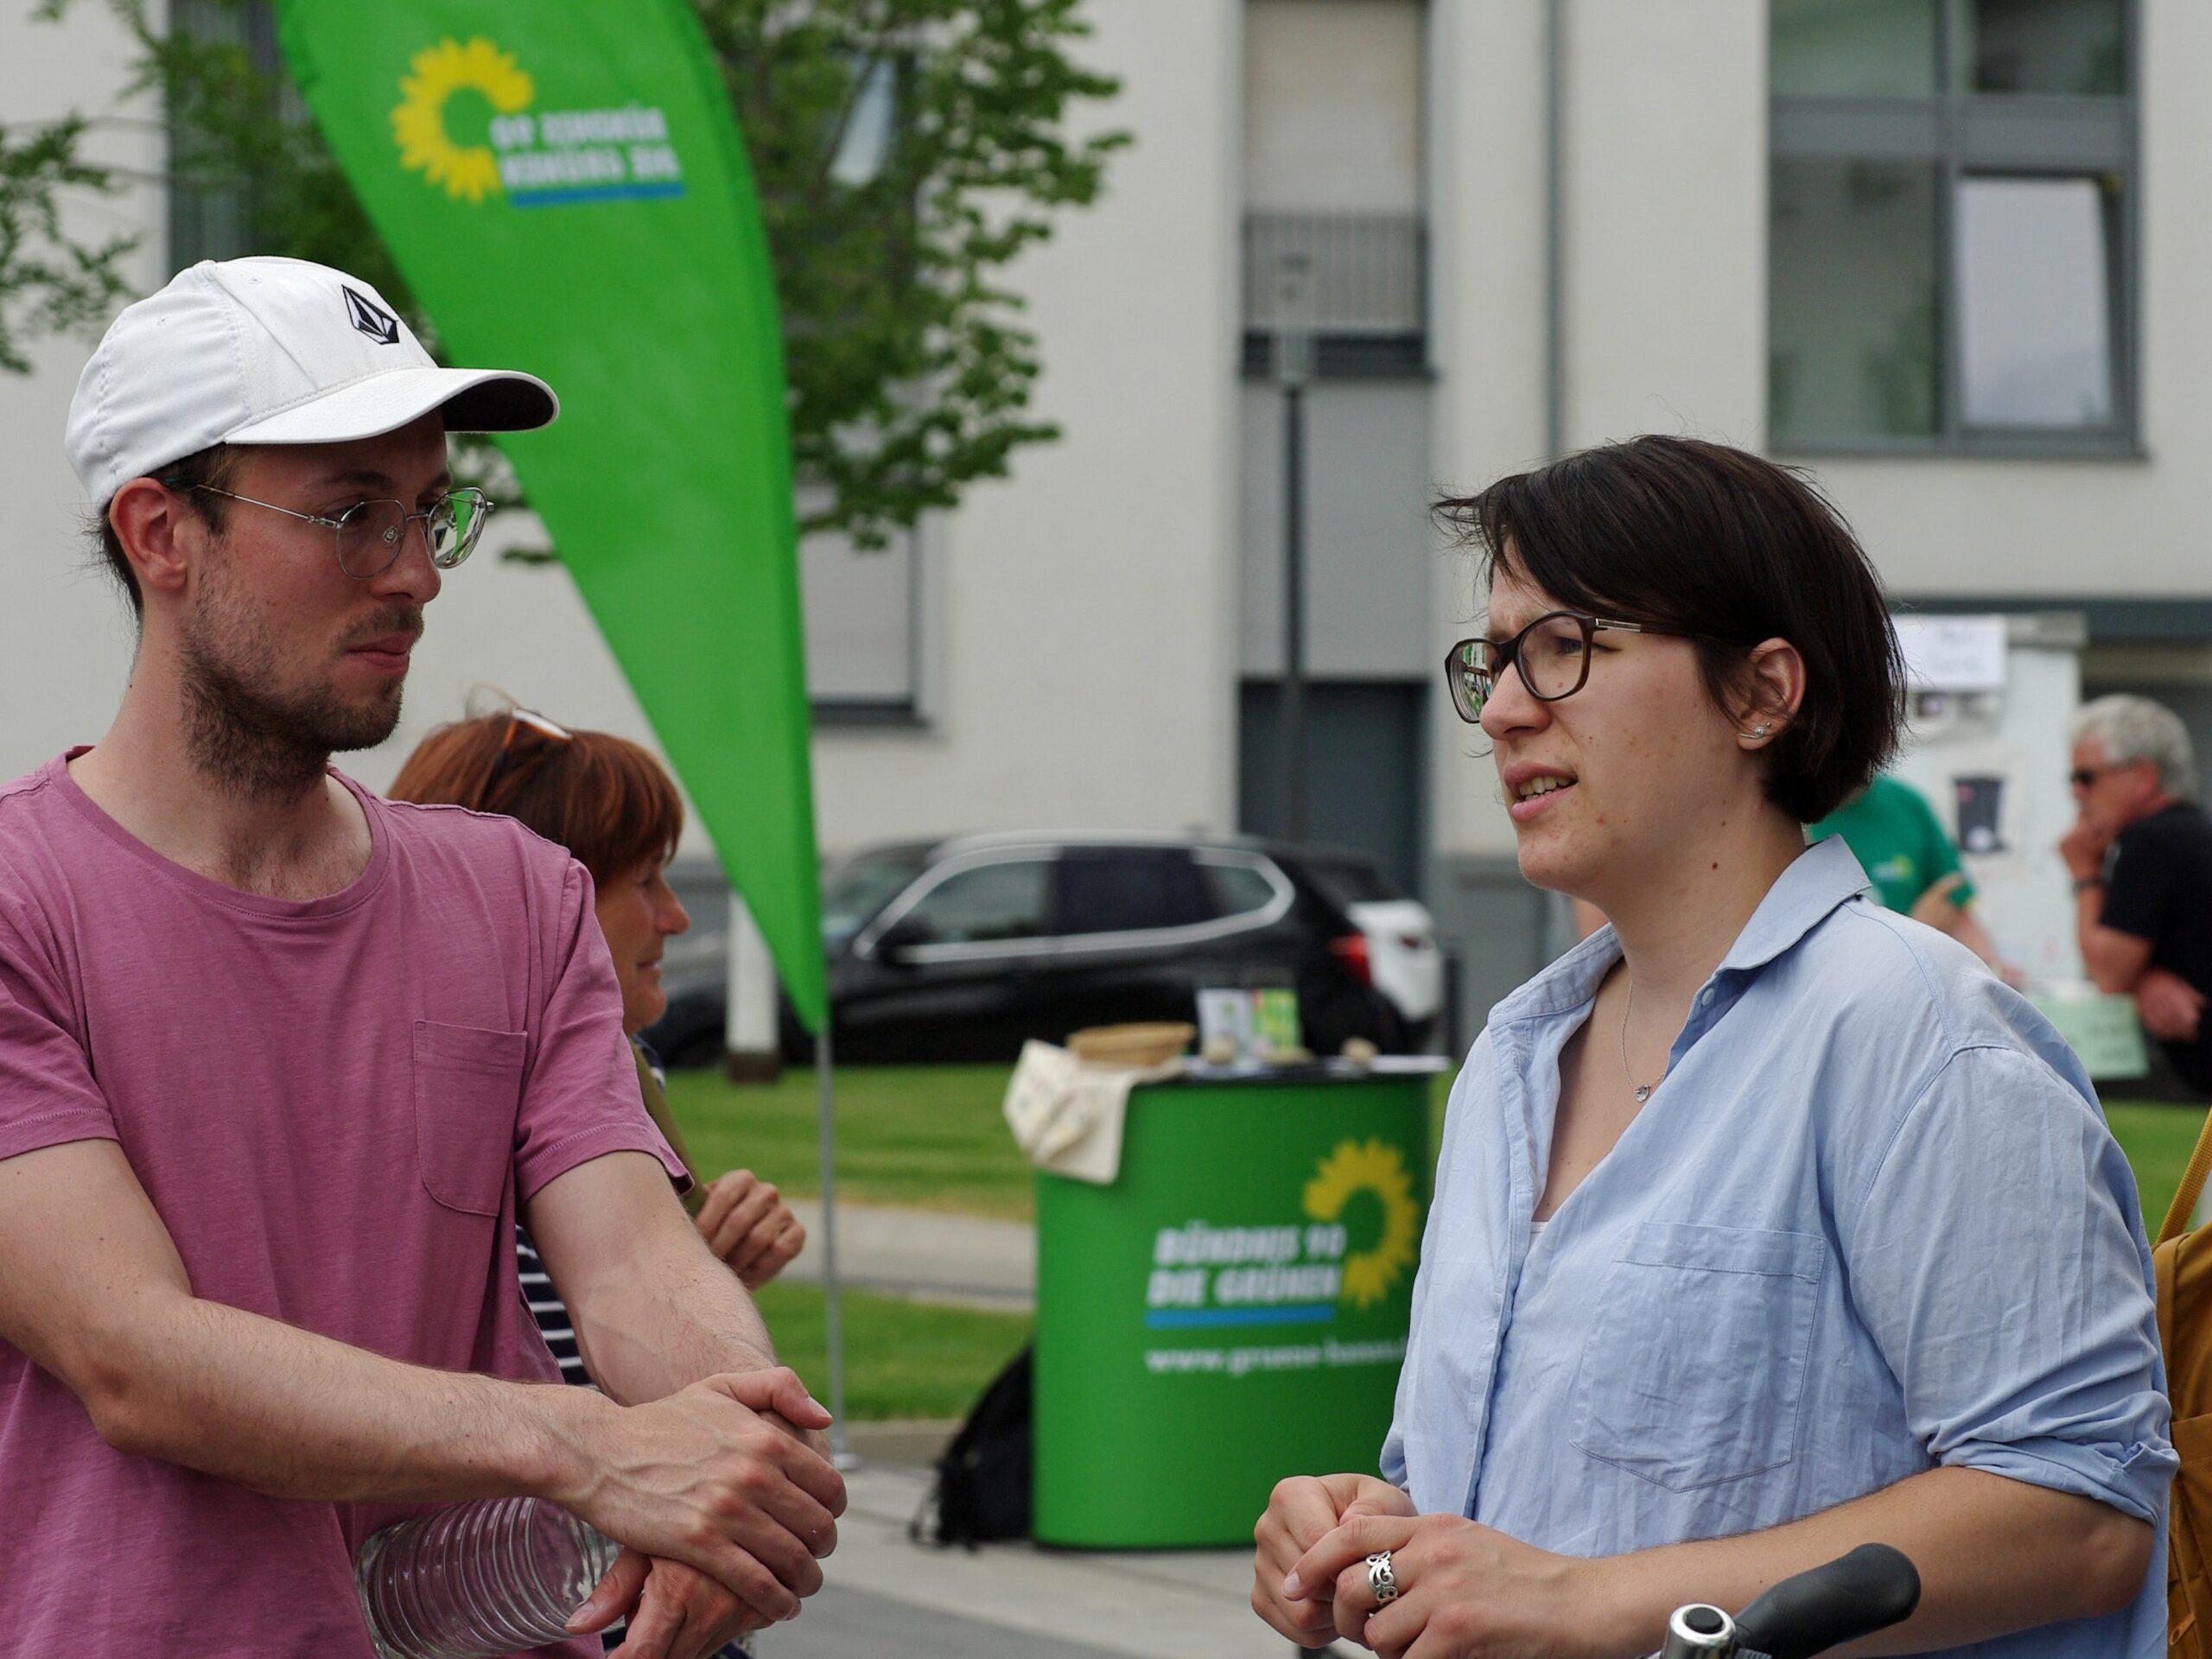 Eine Frau und ein Mann sind im Gespräch. Im Hintergrund ist die grüne Fahne von der Partei Bündnis 90/die Grünen zu sehen.